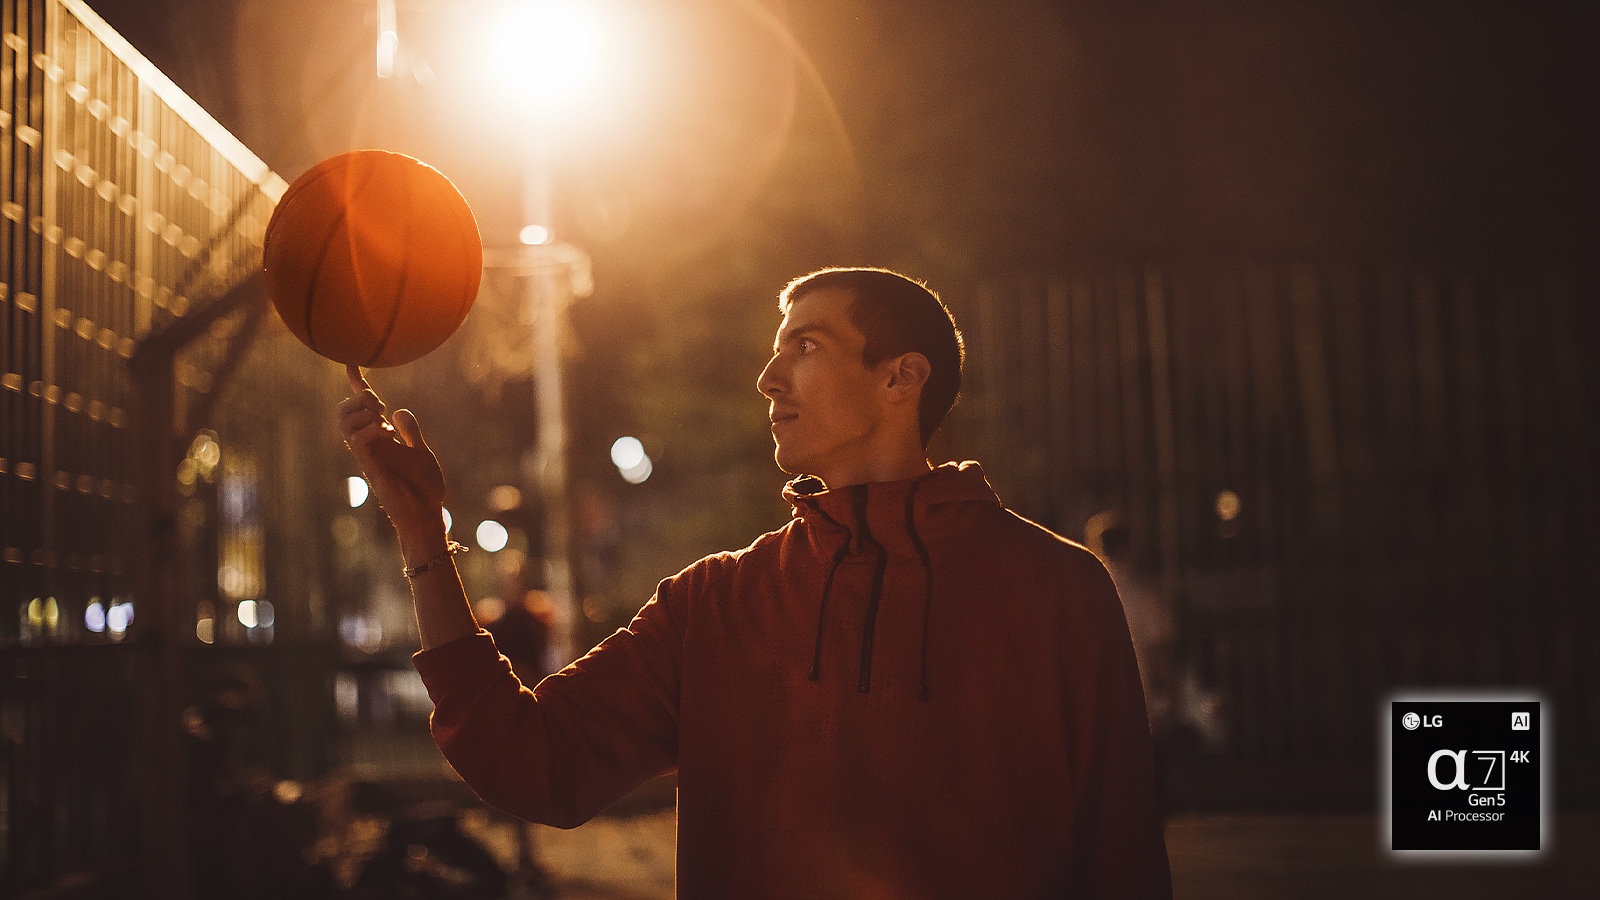 Moški ponoči na košarkarskem igrišču vrti košarkarsko žogo na konici prsta.